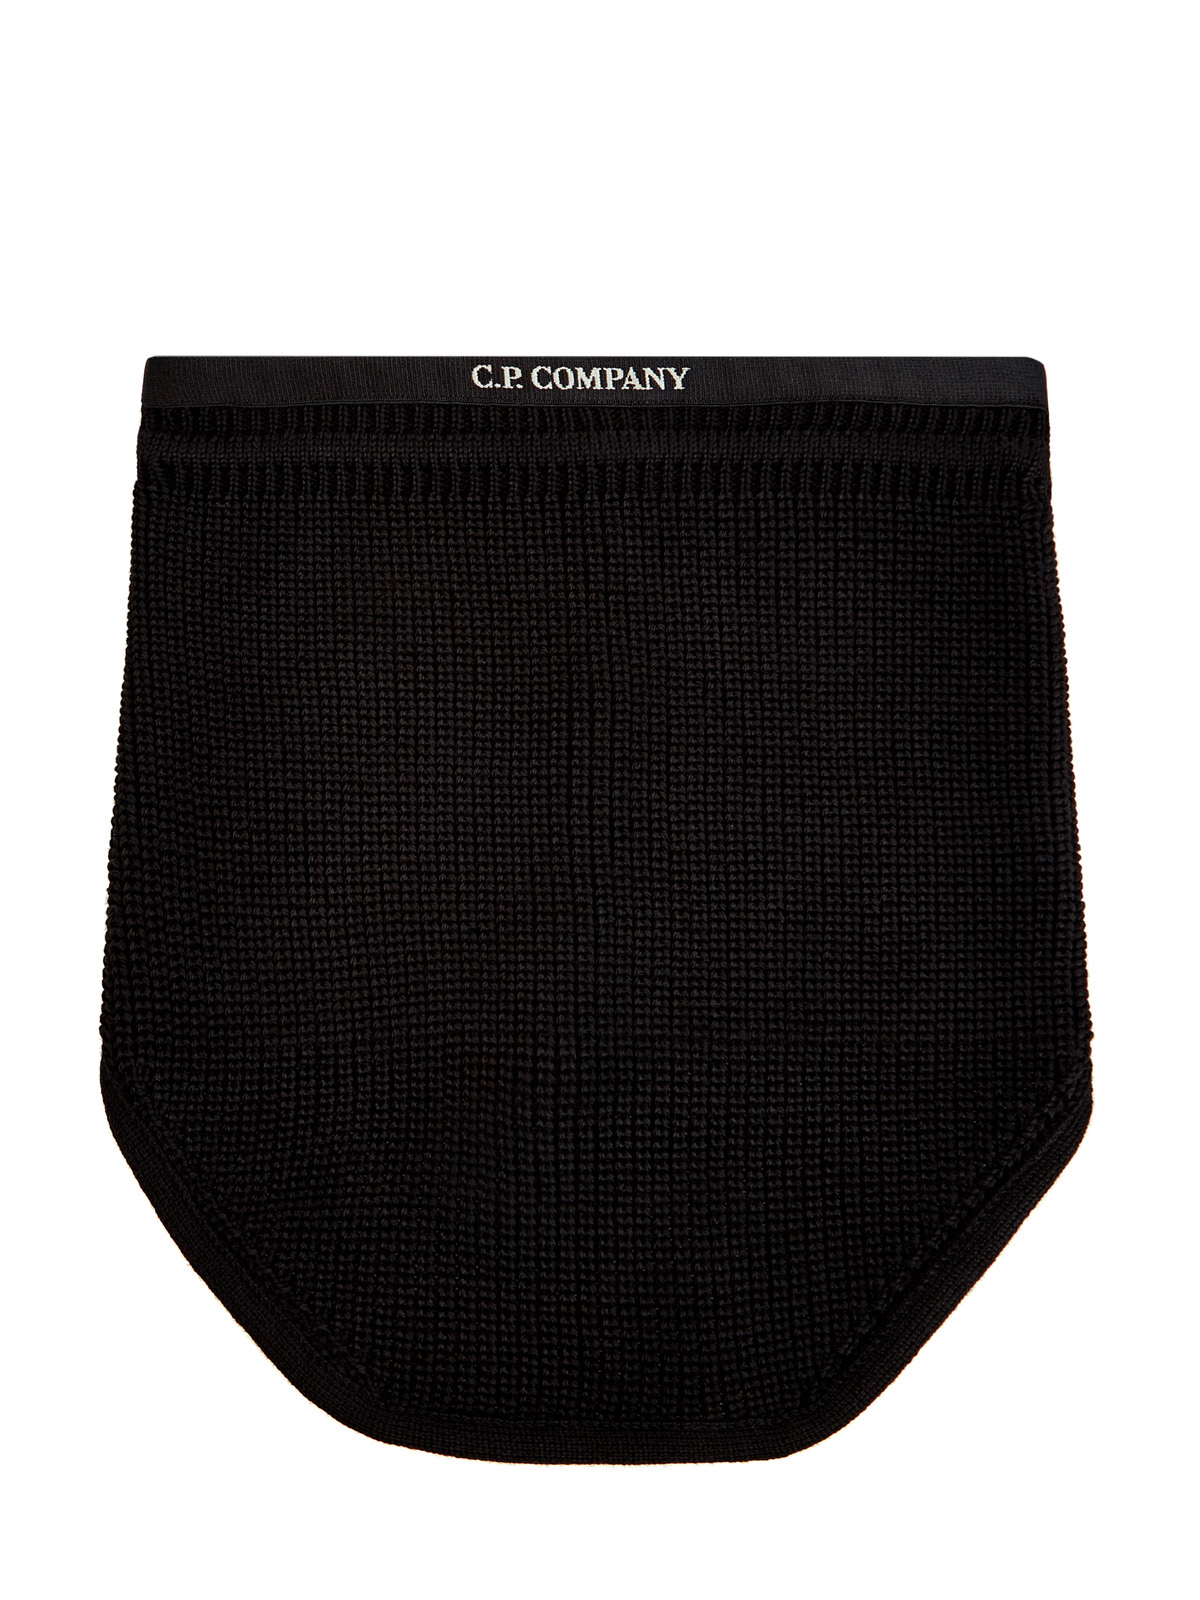 Регулируемый шарф-снуд из шерсти мериноса с логотипом C.P.COMPANY, цвет черный, размер 57